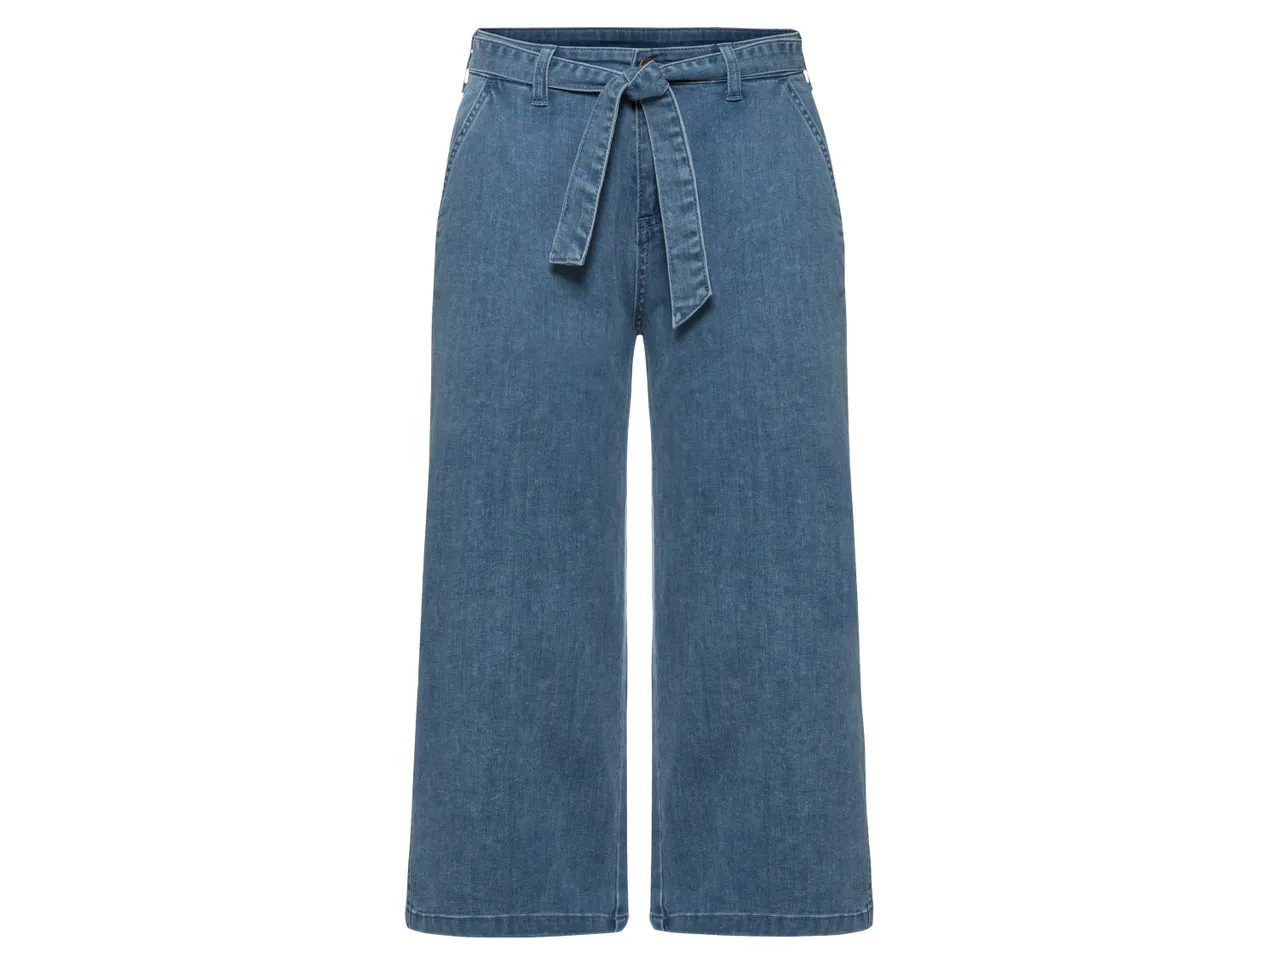 Jeans in canapa da donna , prezzo 11.99 EUR 
Jeans in canapa da donna Misure: 38-48 ...